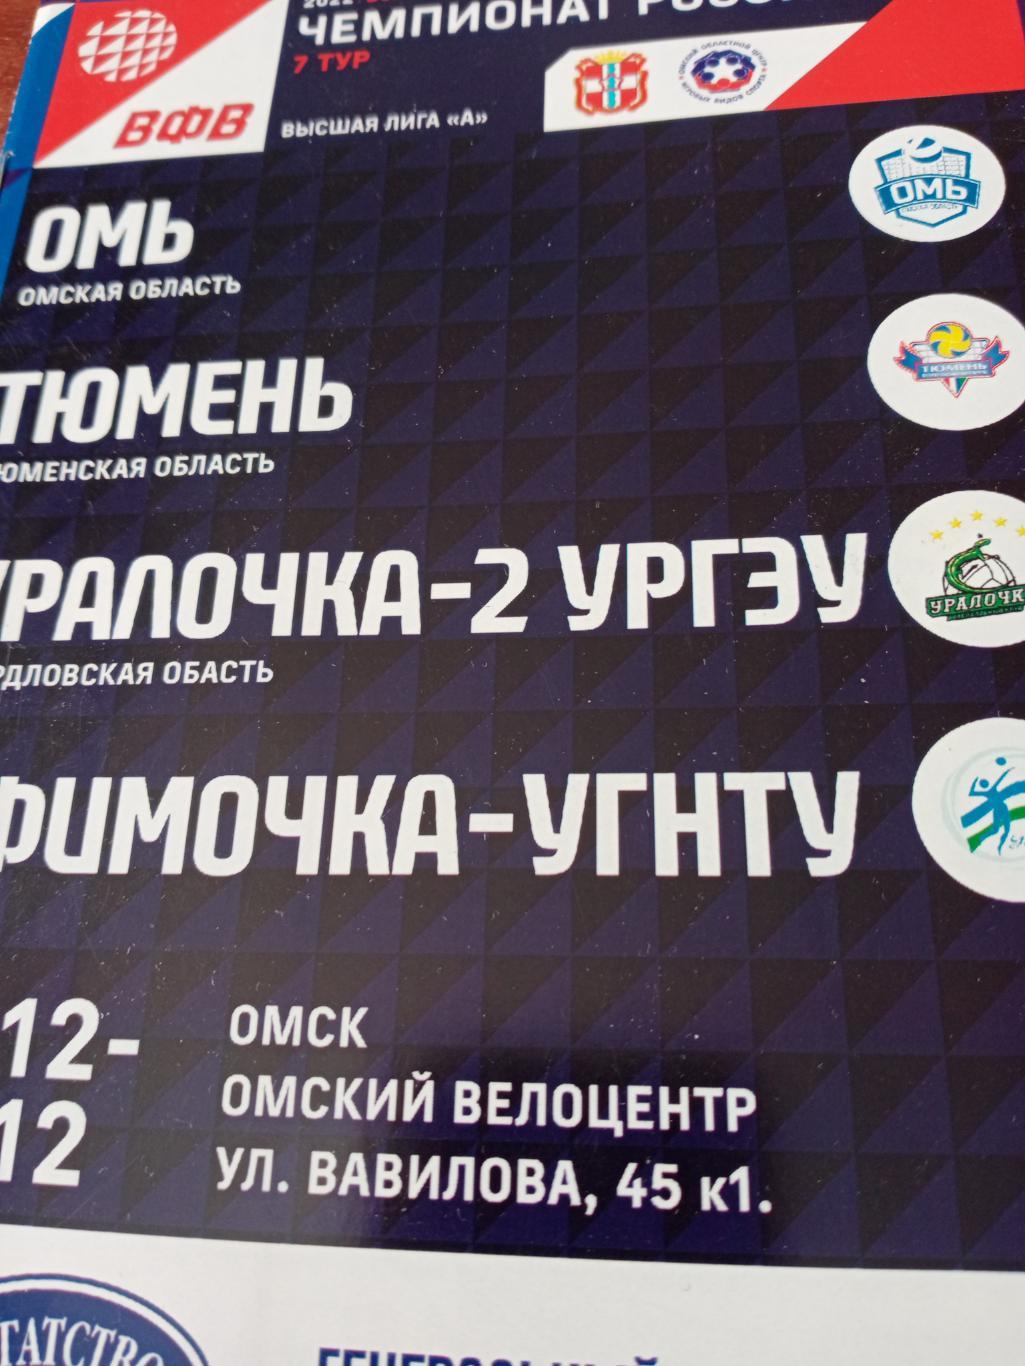 Высшая лига А. Тур в Омске. 23 - 26.12.2021 год